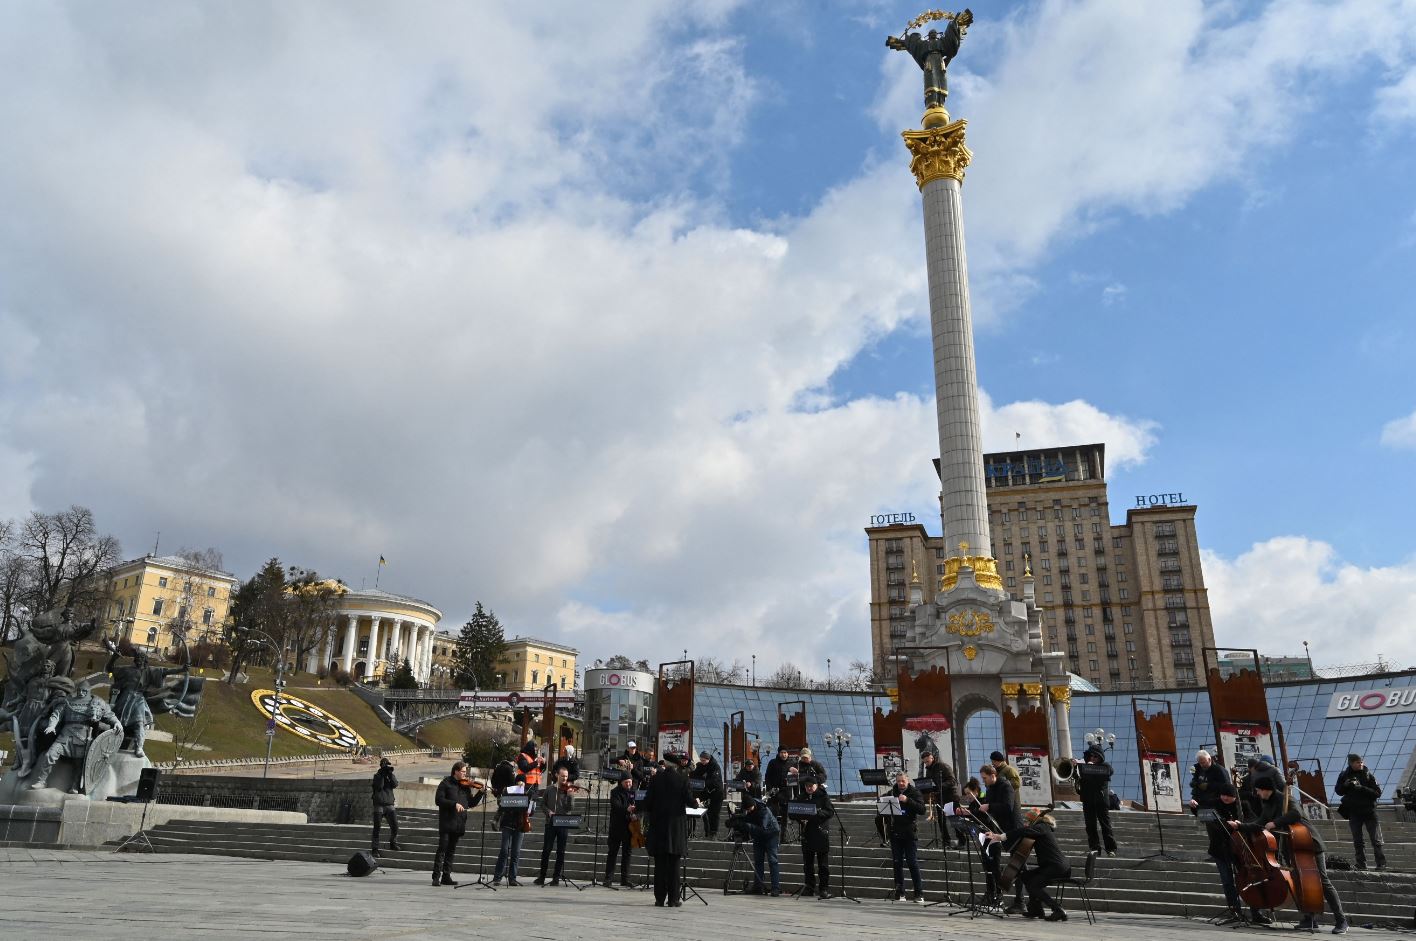 Sinh viên Trung Quốc ở Kyiv: Tôi đã nhận ra bản chất thật của chính quyền Trung Quốc